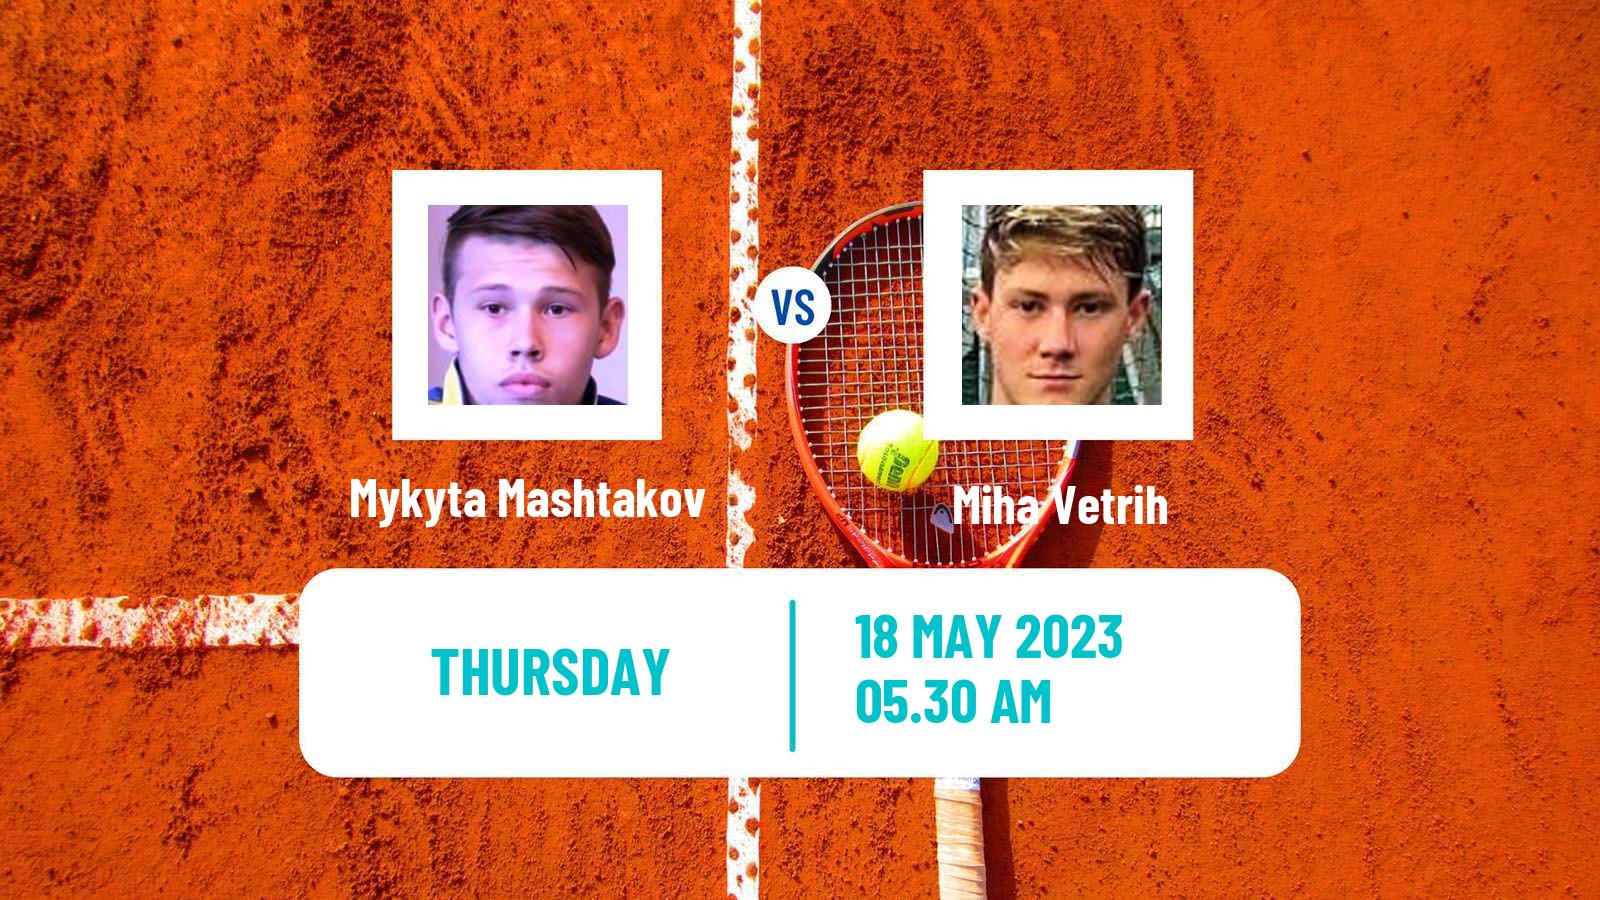 Tennis ITF M15 Krsko Men Mykyta Mashtakov - Miha Vetrih